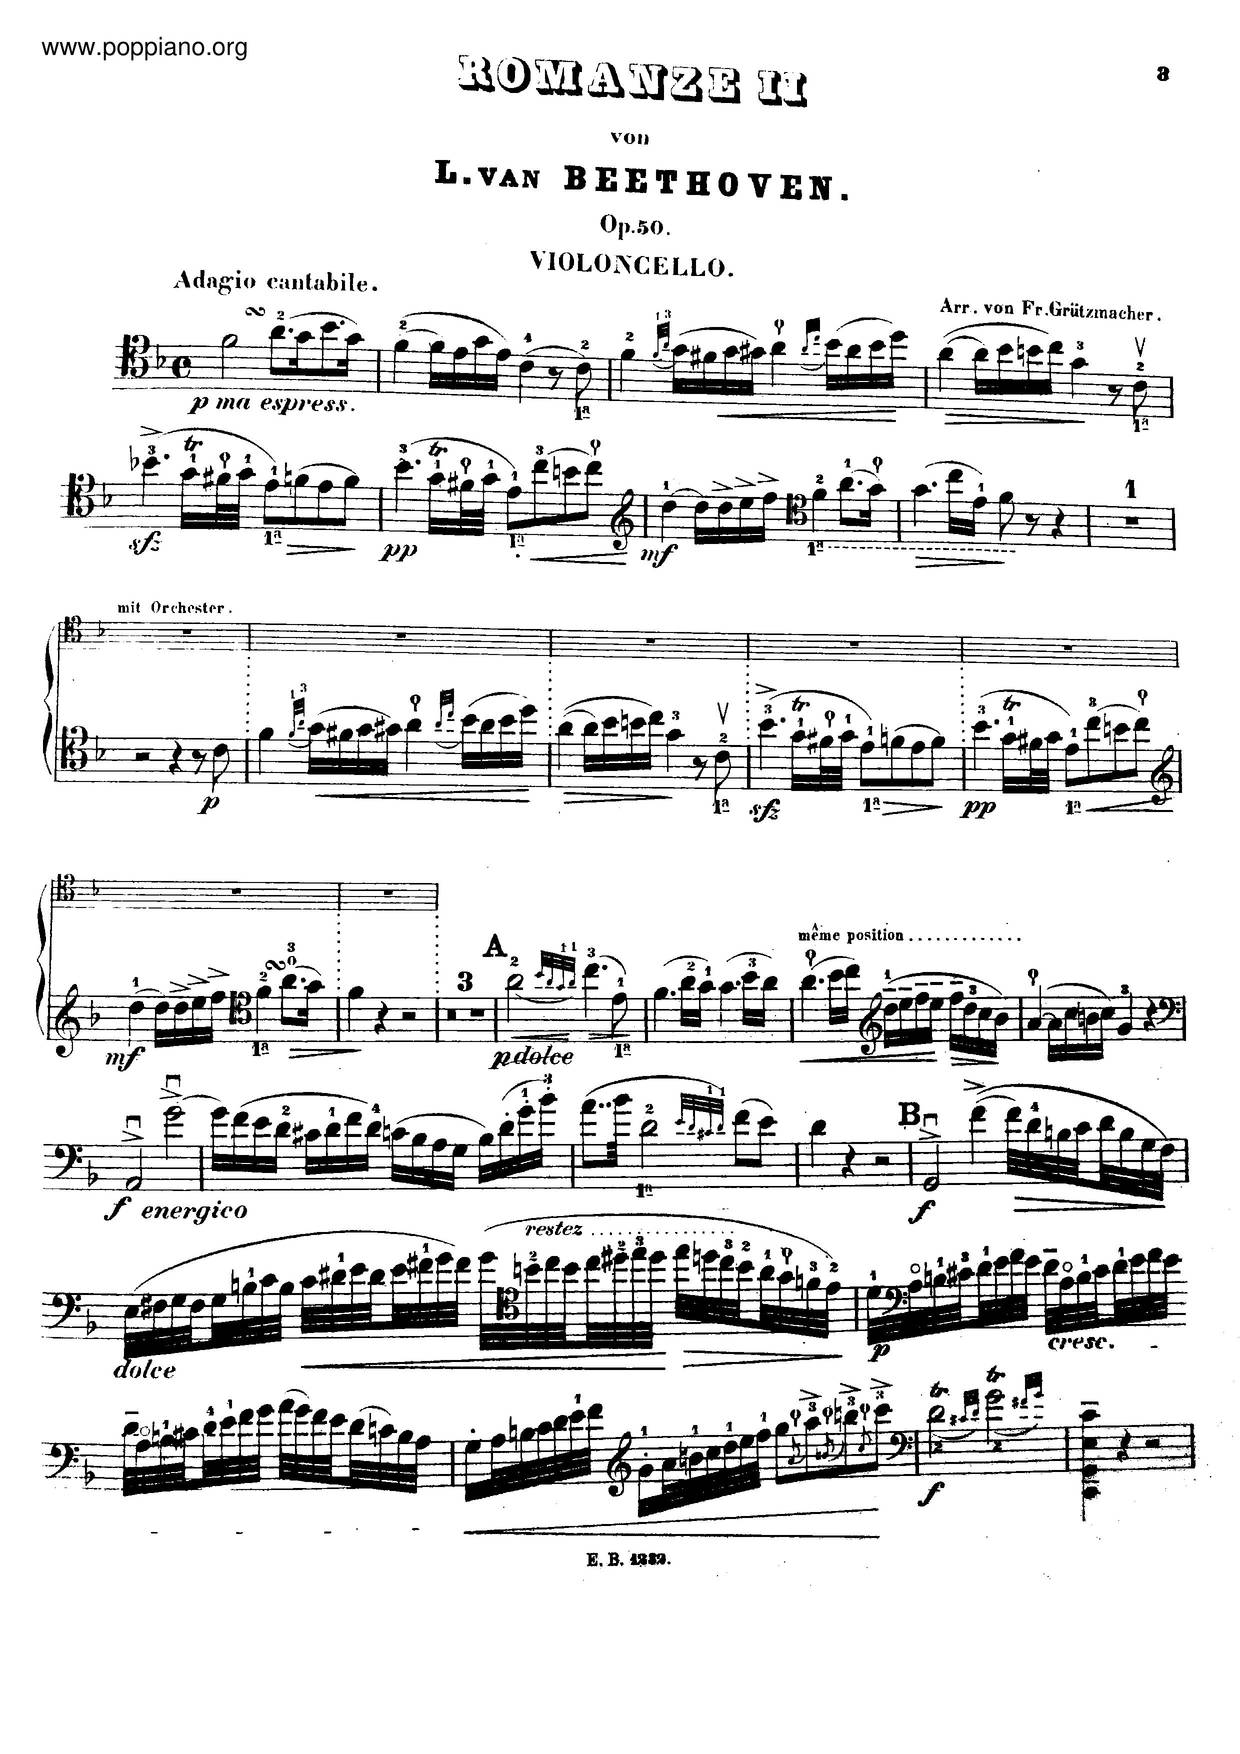 Romance In F Major, Op. 50 Score